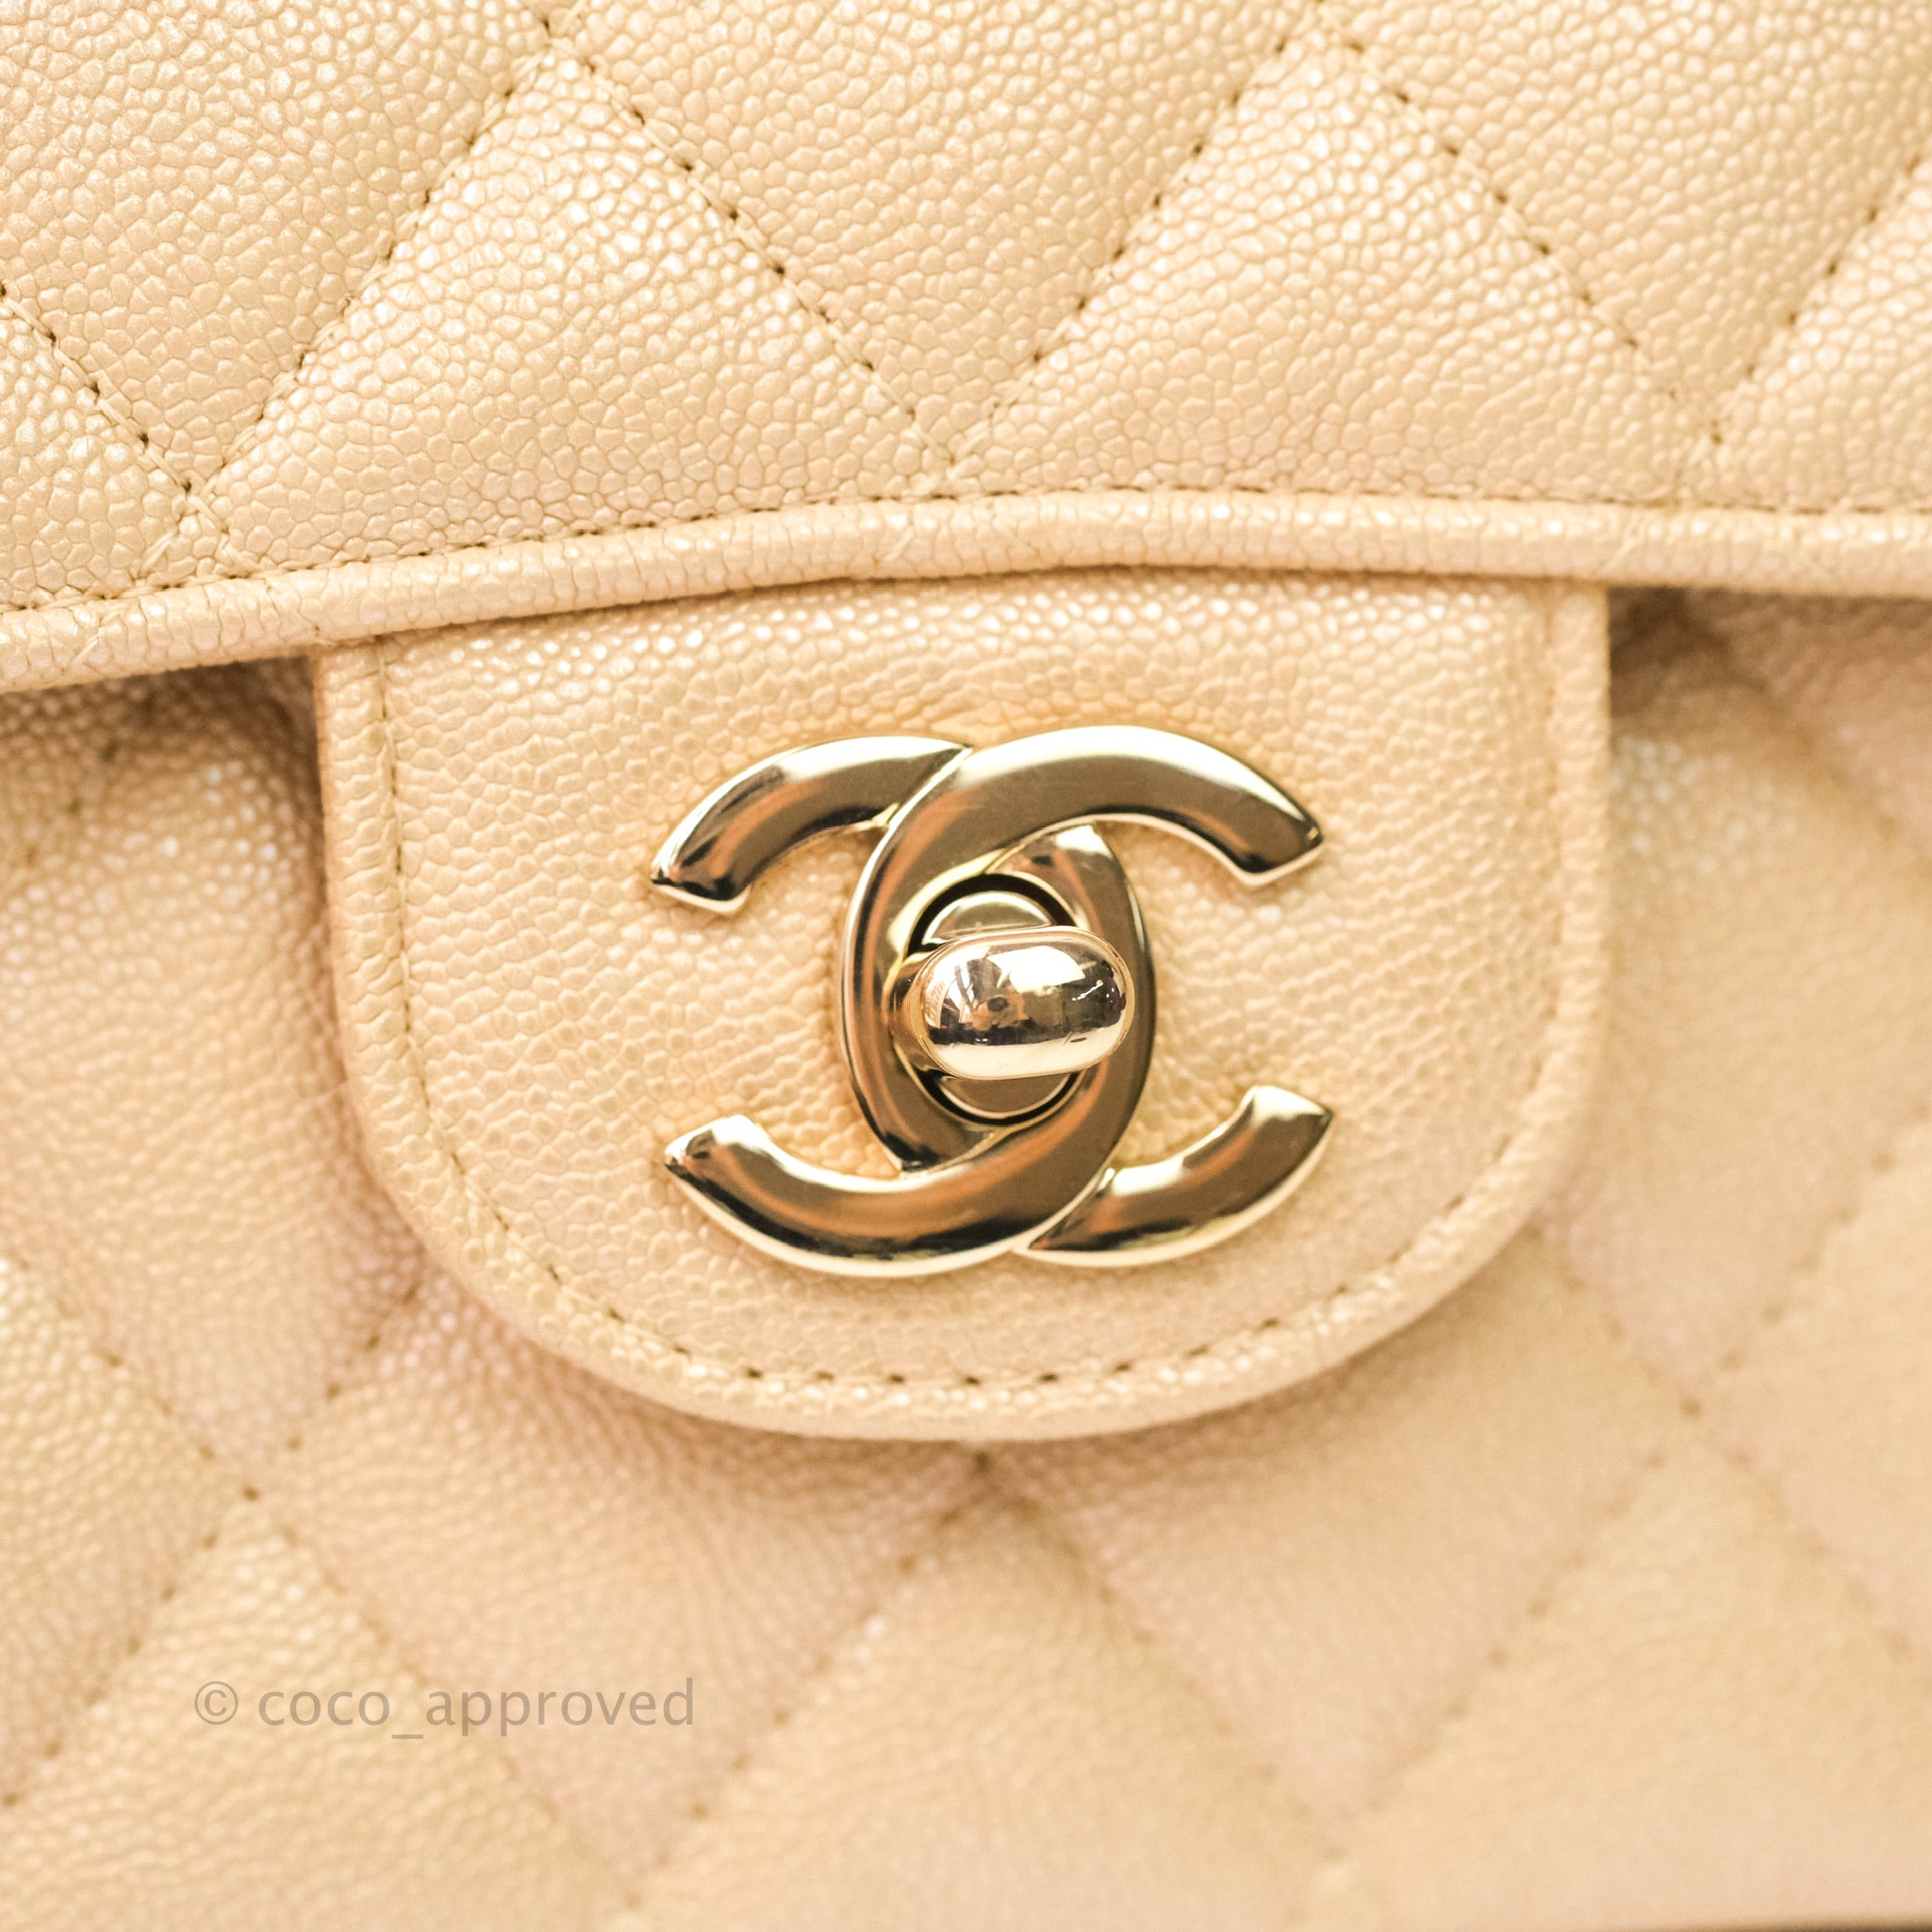 Chanel Medium Classic Flap, Caviar, Beige SHW - Laulay Luxury